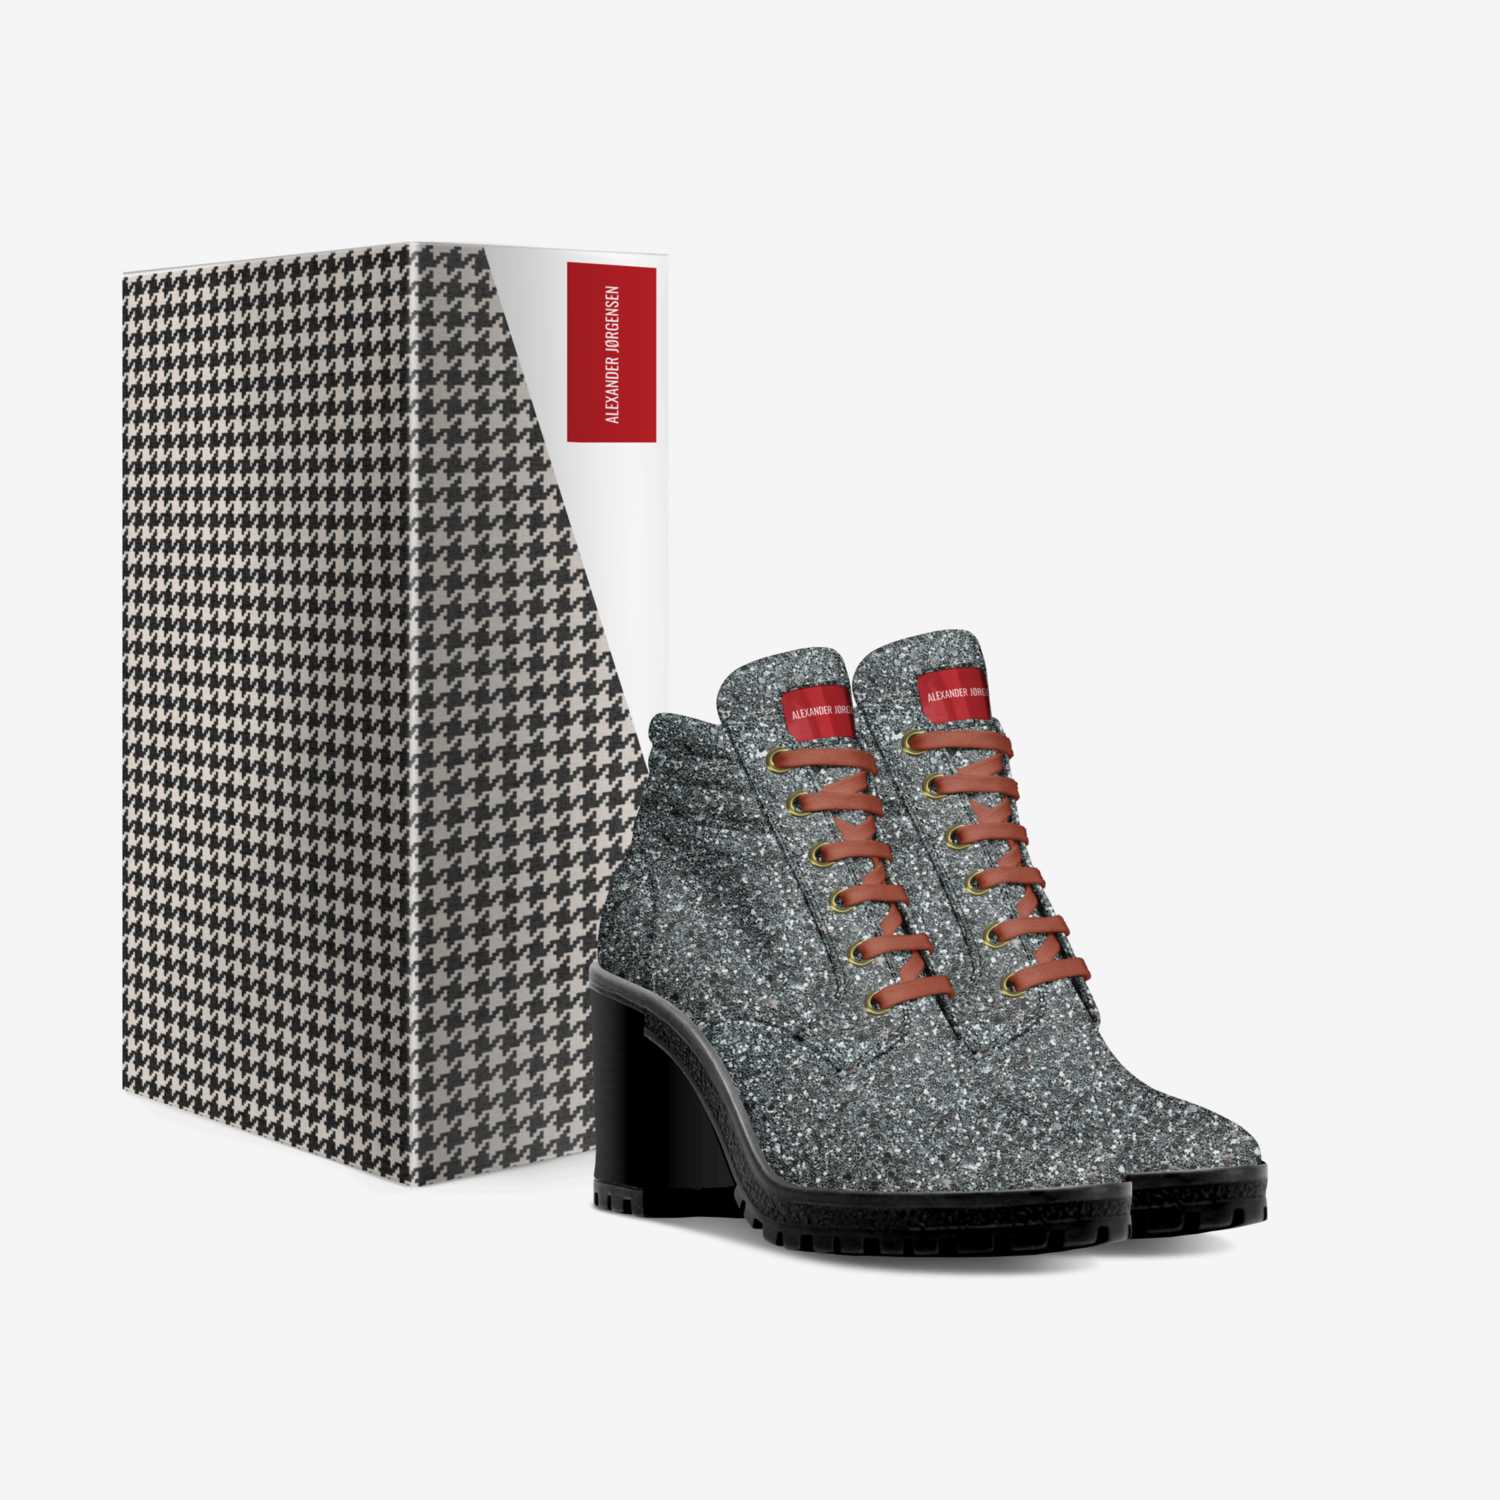 Alexander Jørgensen custom made in Italy shoes by Alexander Jørgensen | Box view